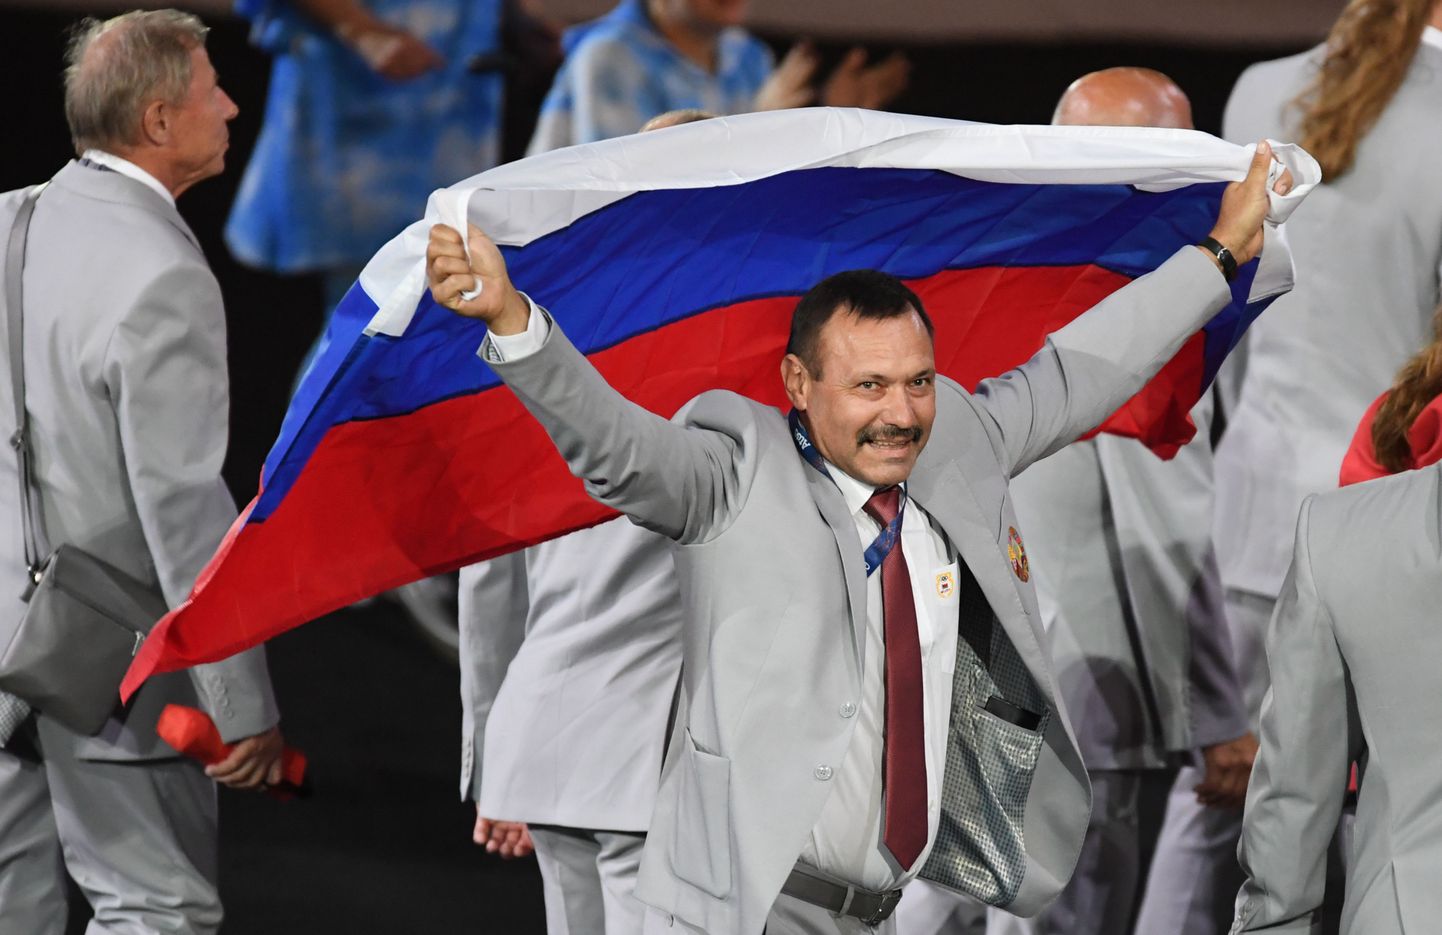 Белорусская делегация вышла на открытие Паралимпиады с флагом России.